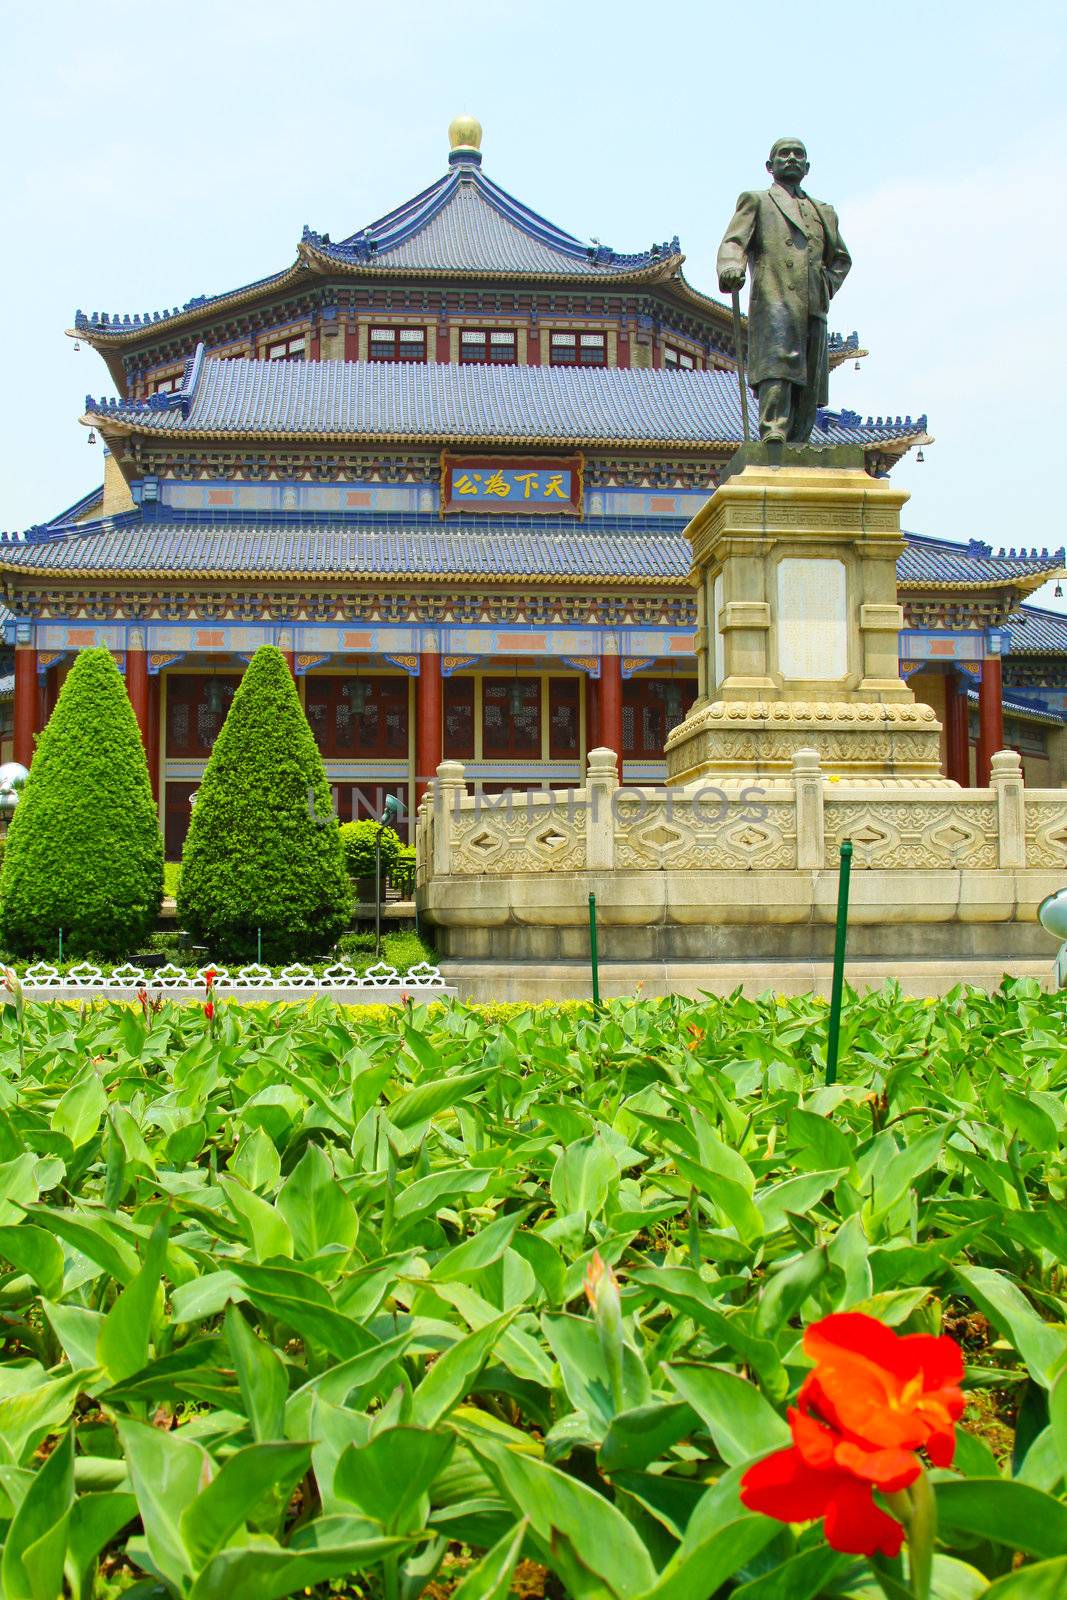 The Sun Yat-Sen Memorial Hall in Guangzhou, China. by kawing921